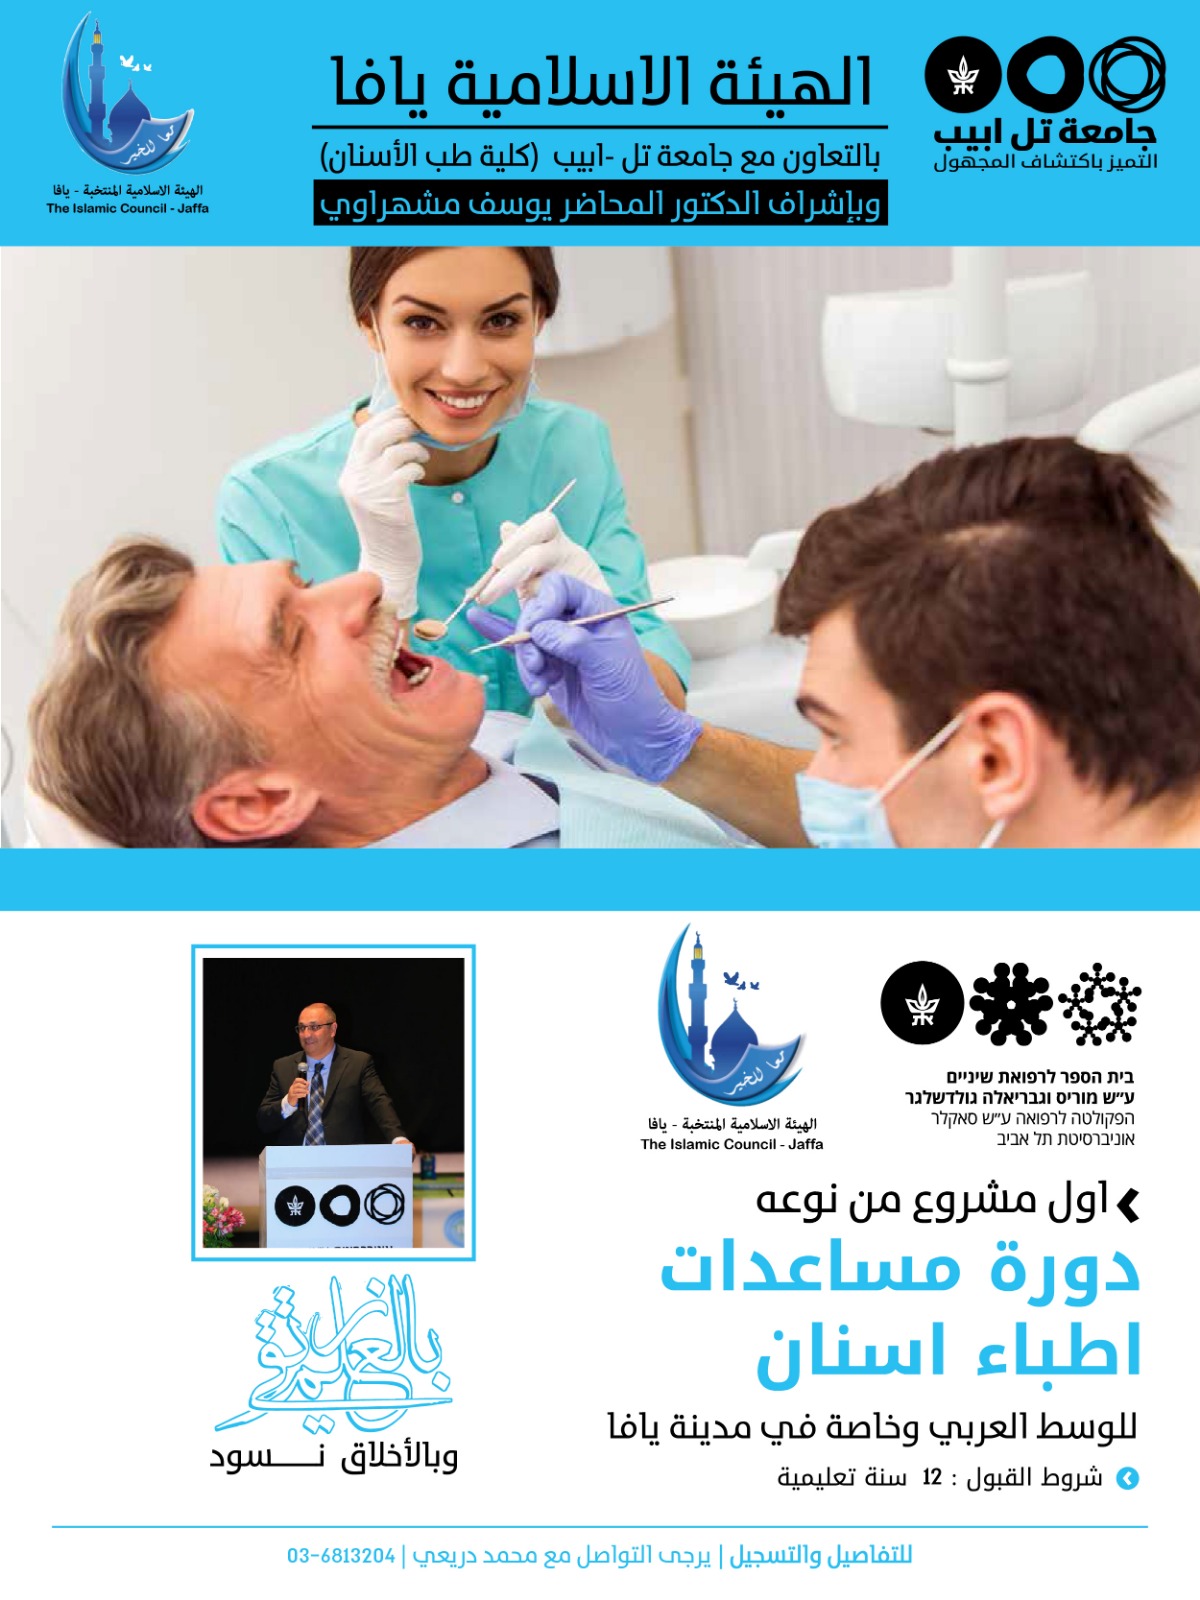 الهيئة الاسلامية: إفتتاح مشروع تعليمي لمهنة مساعدات طبيب أسنان 